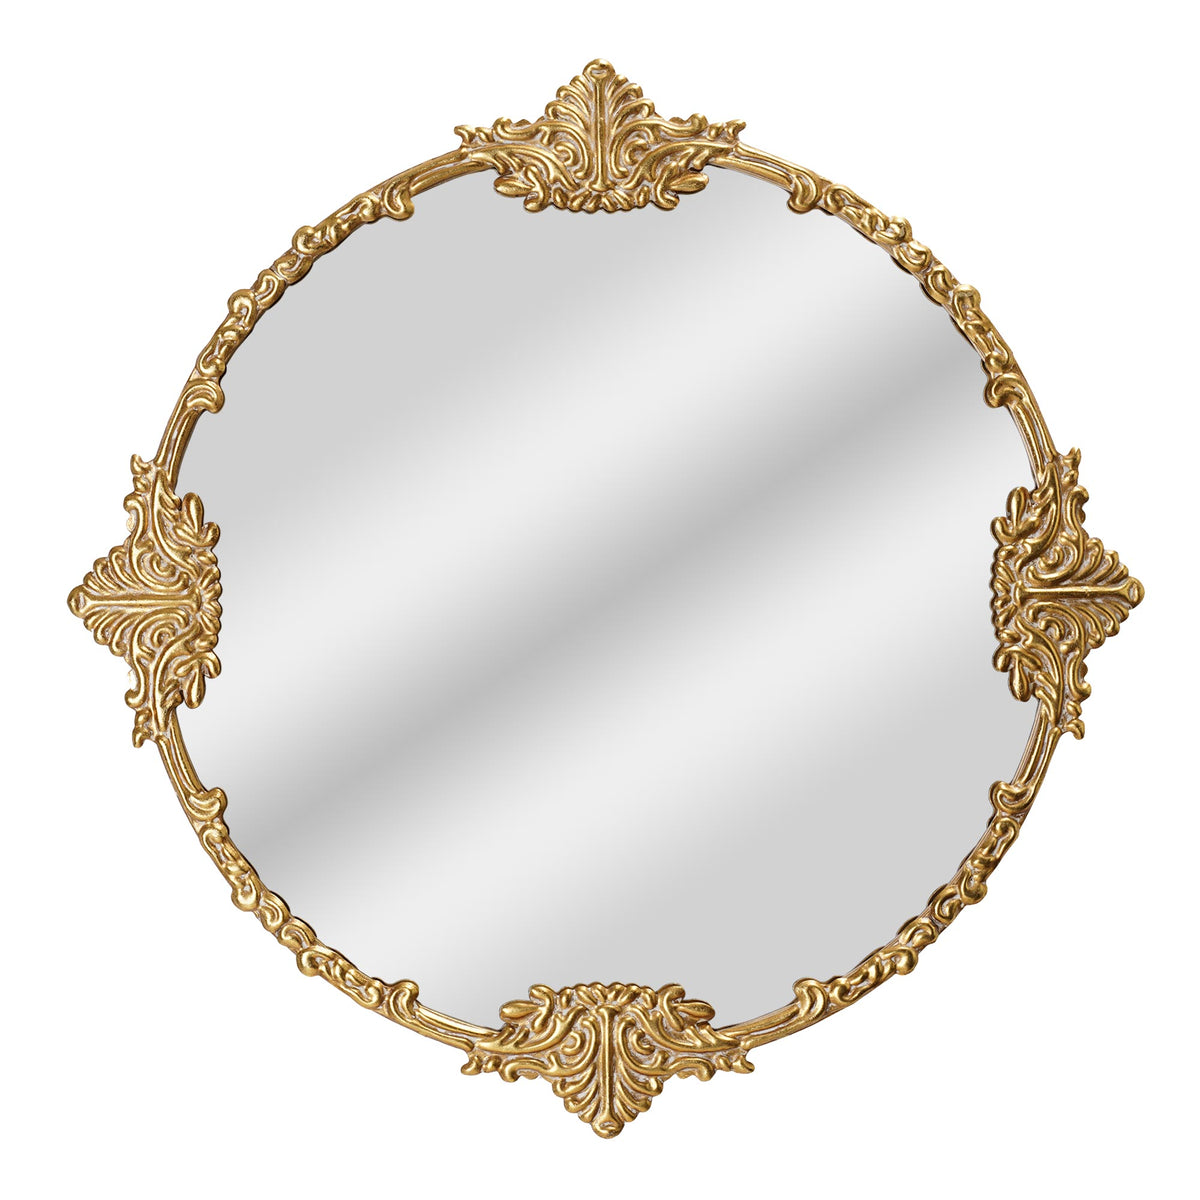 Round Ornate Gold Frame Mirror 24